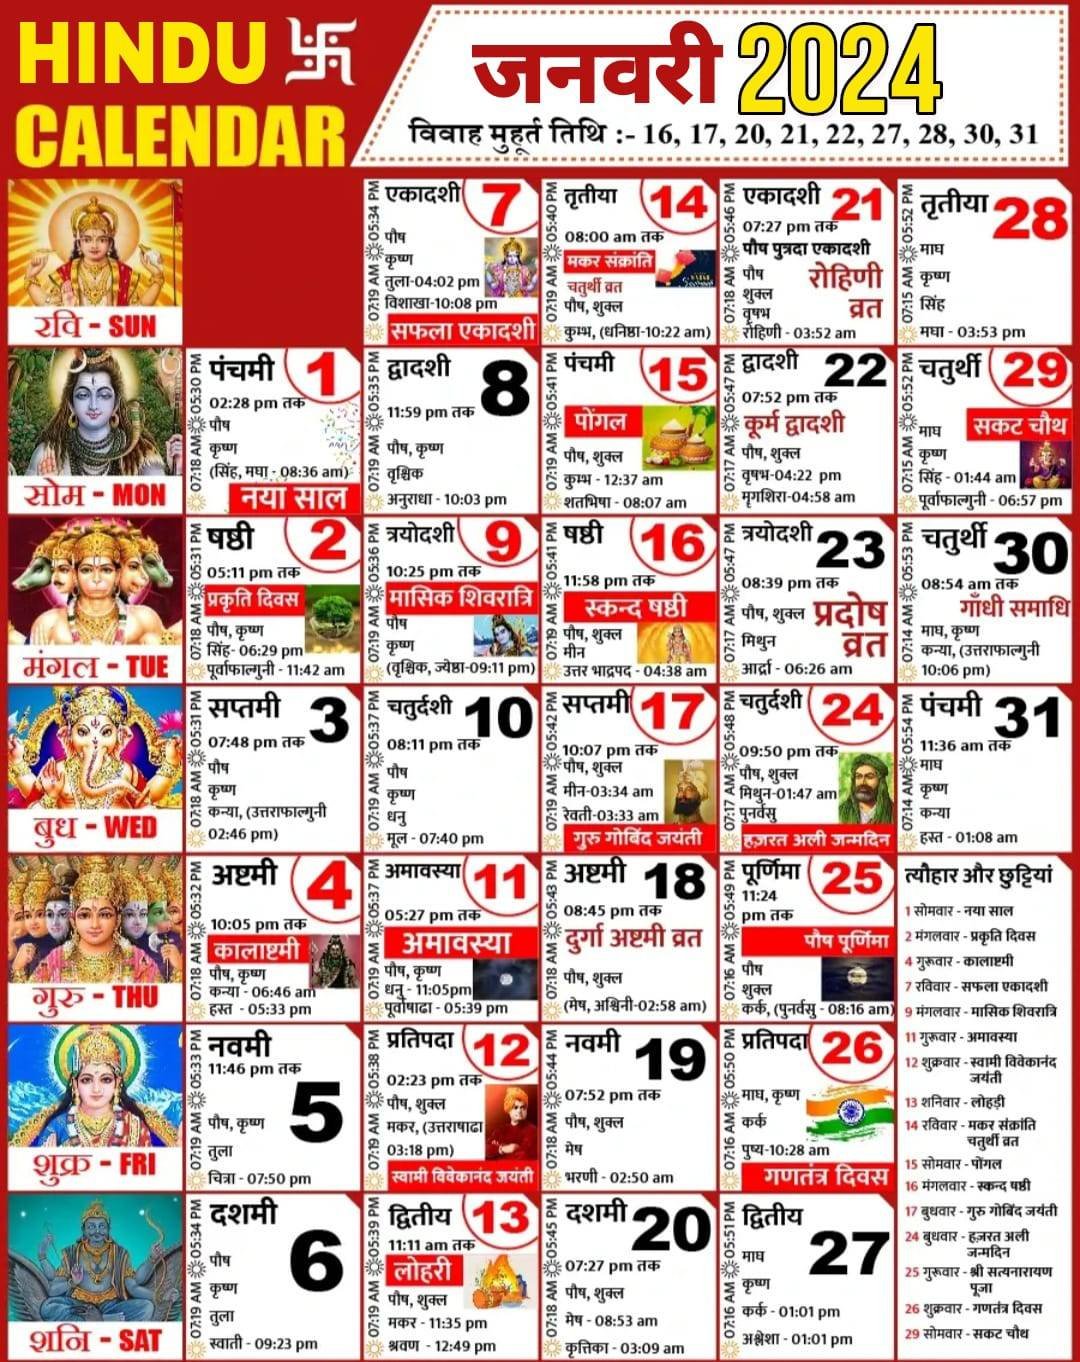 Hindu Calendar 2024 January 